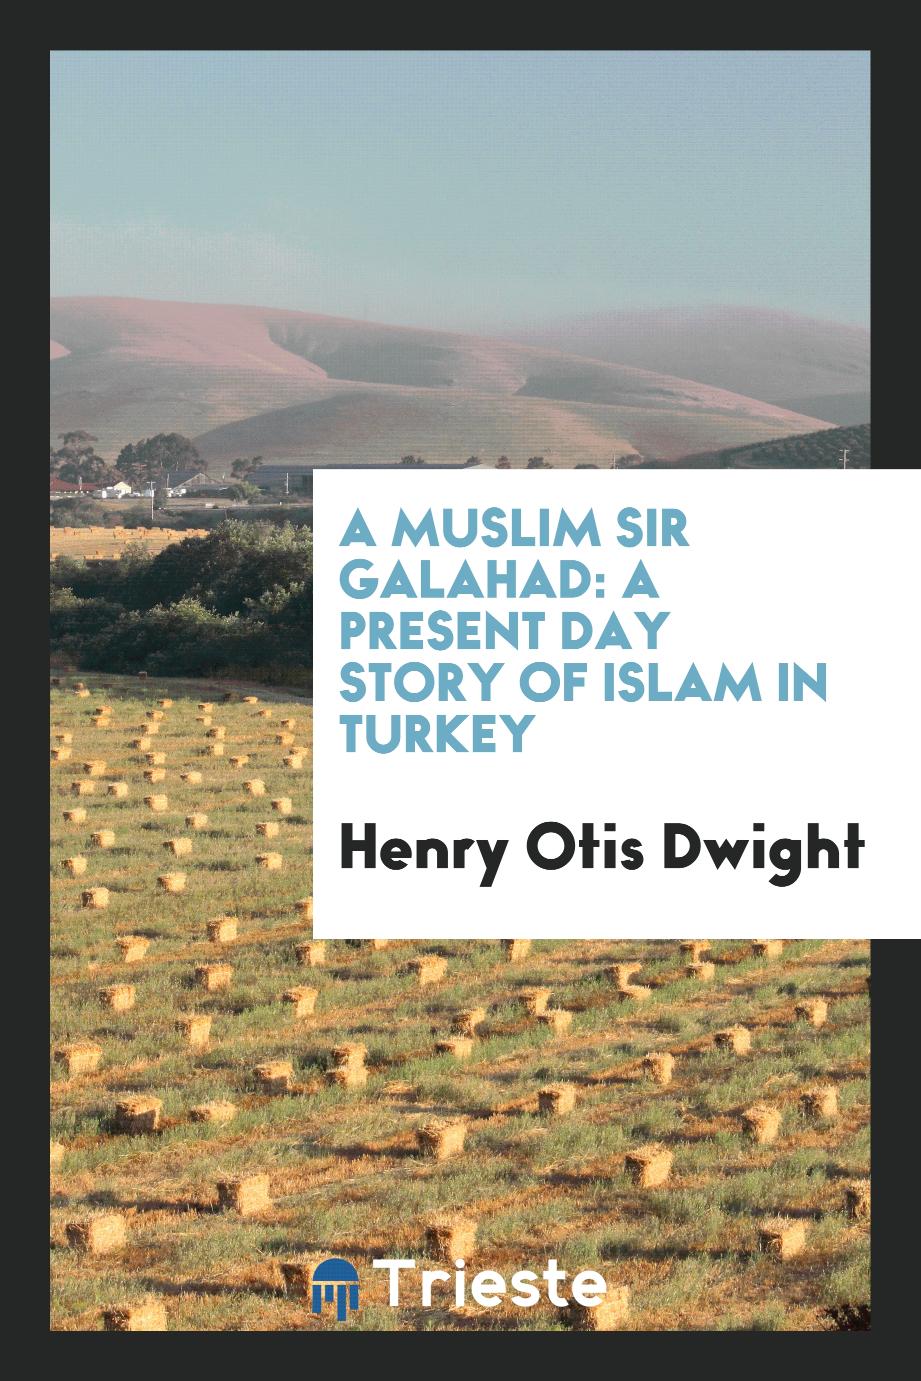 A Muslim Sir Galahad: a present day story of Islam in Turkey